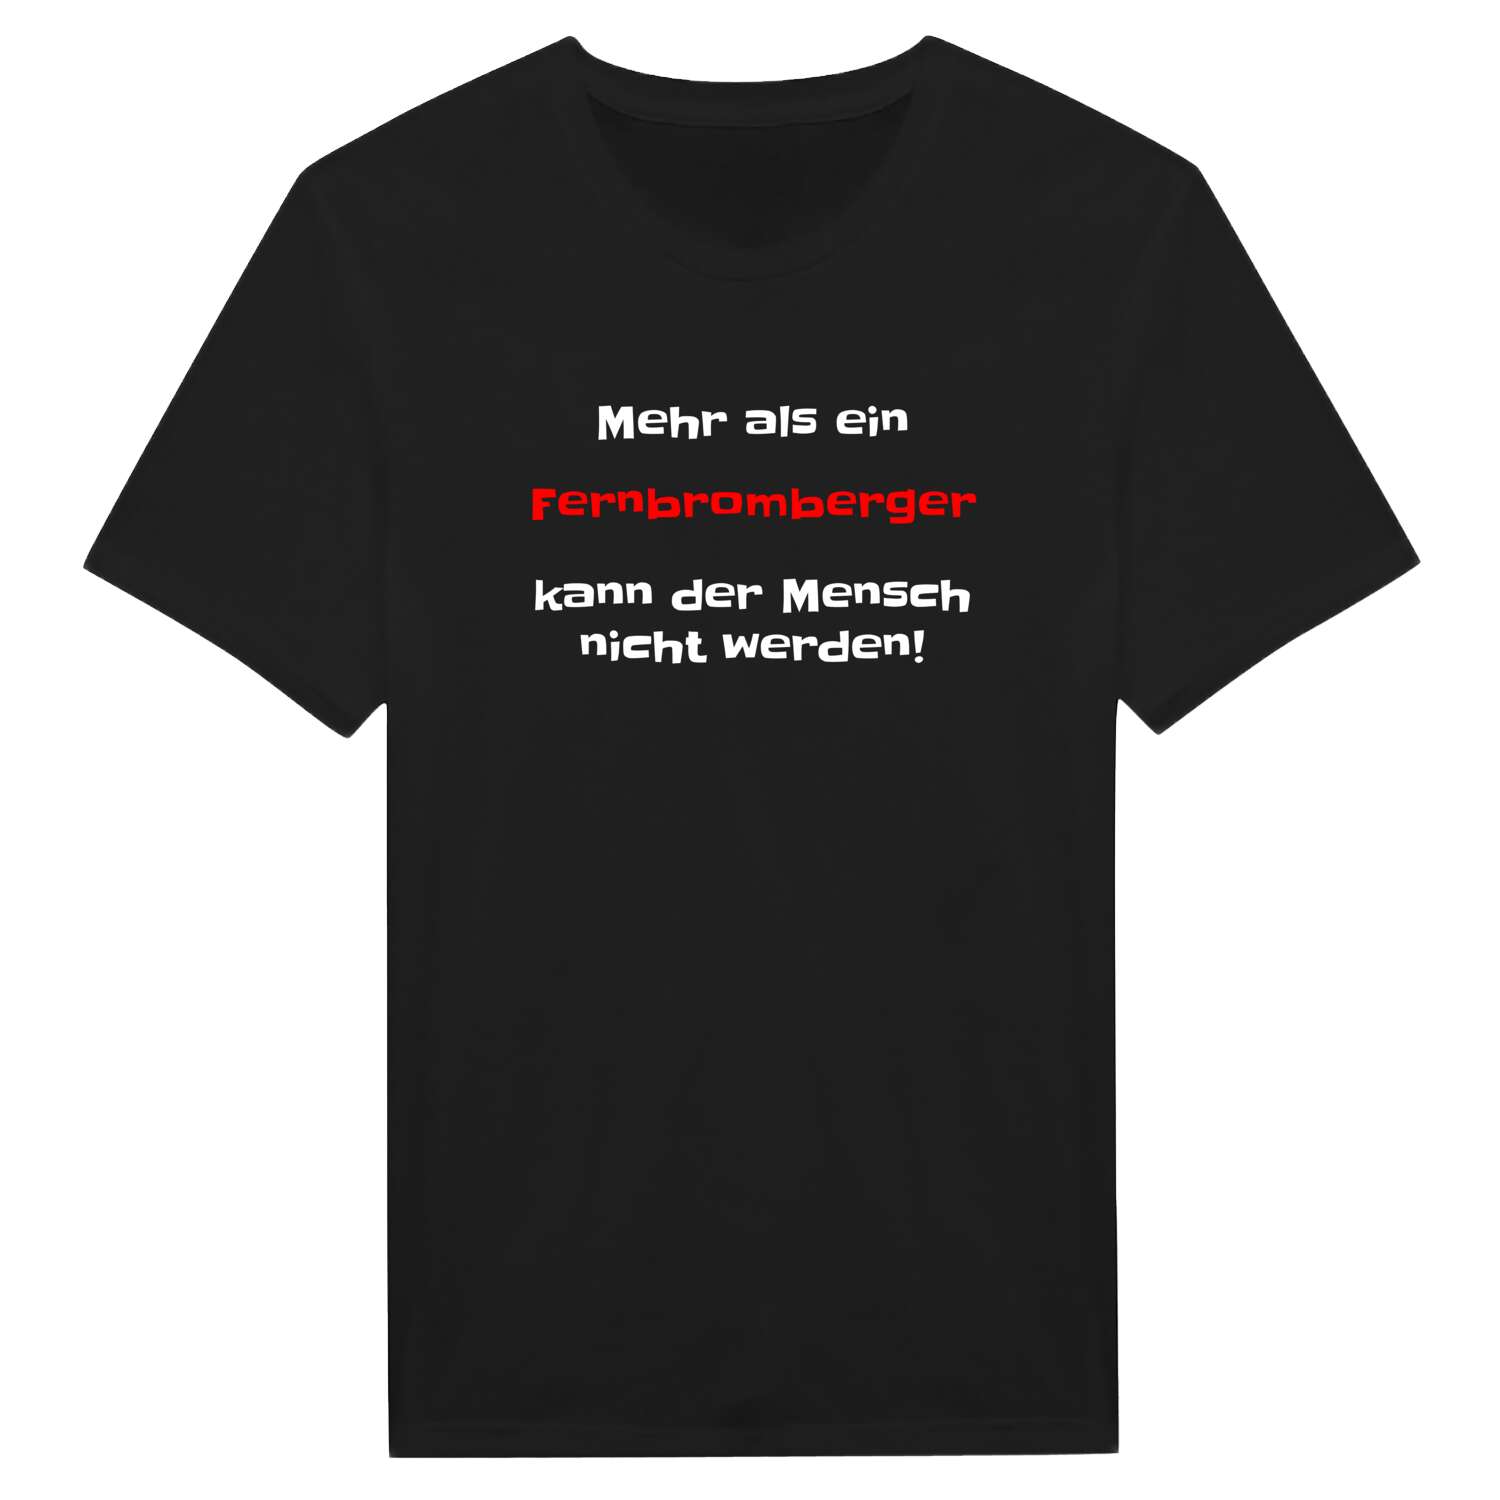 Fernbromberg T-Shirt »Mehr als ein«